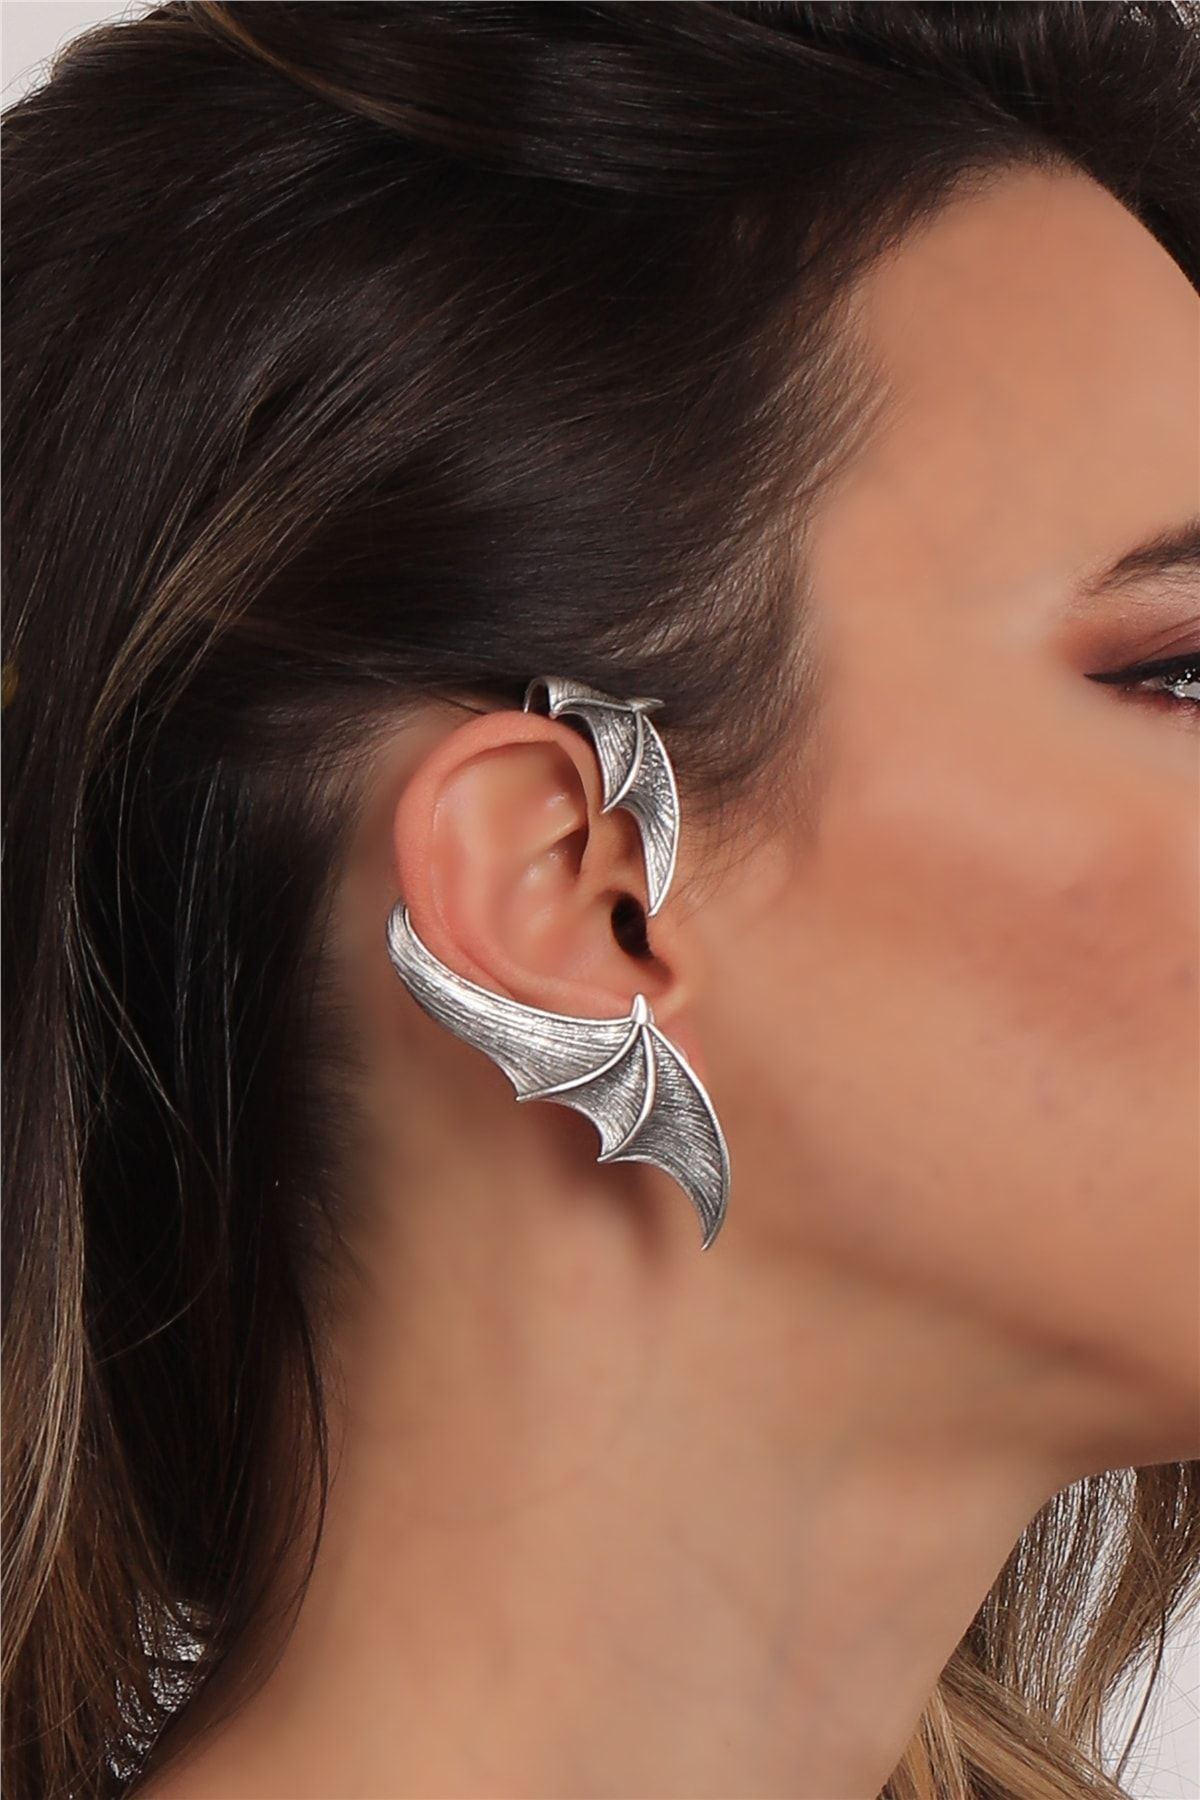 LABALABA Kadın Antik Gümüş Kaplama Çivili Model Ear Cuff Sağ Kulak Yarasa Küpe